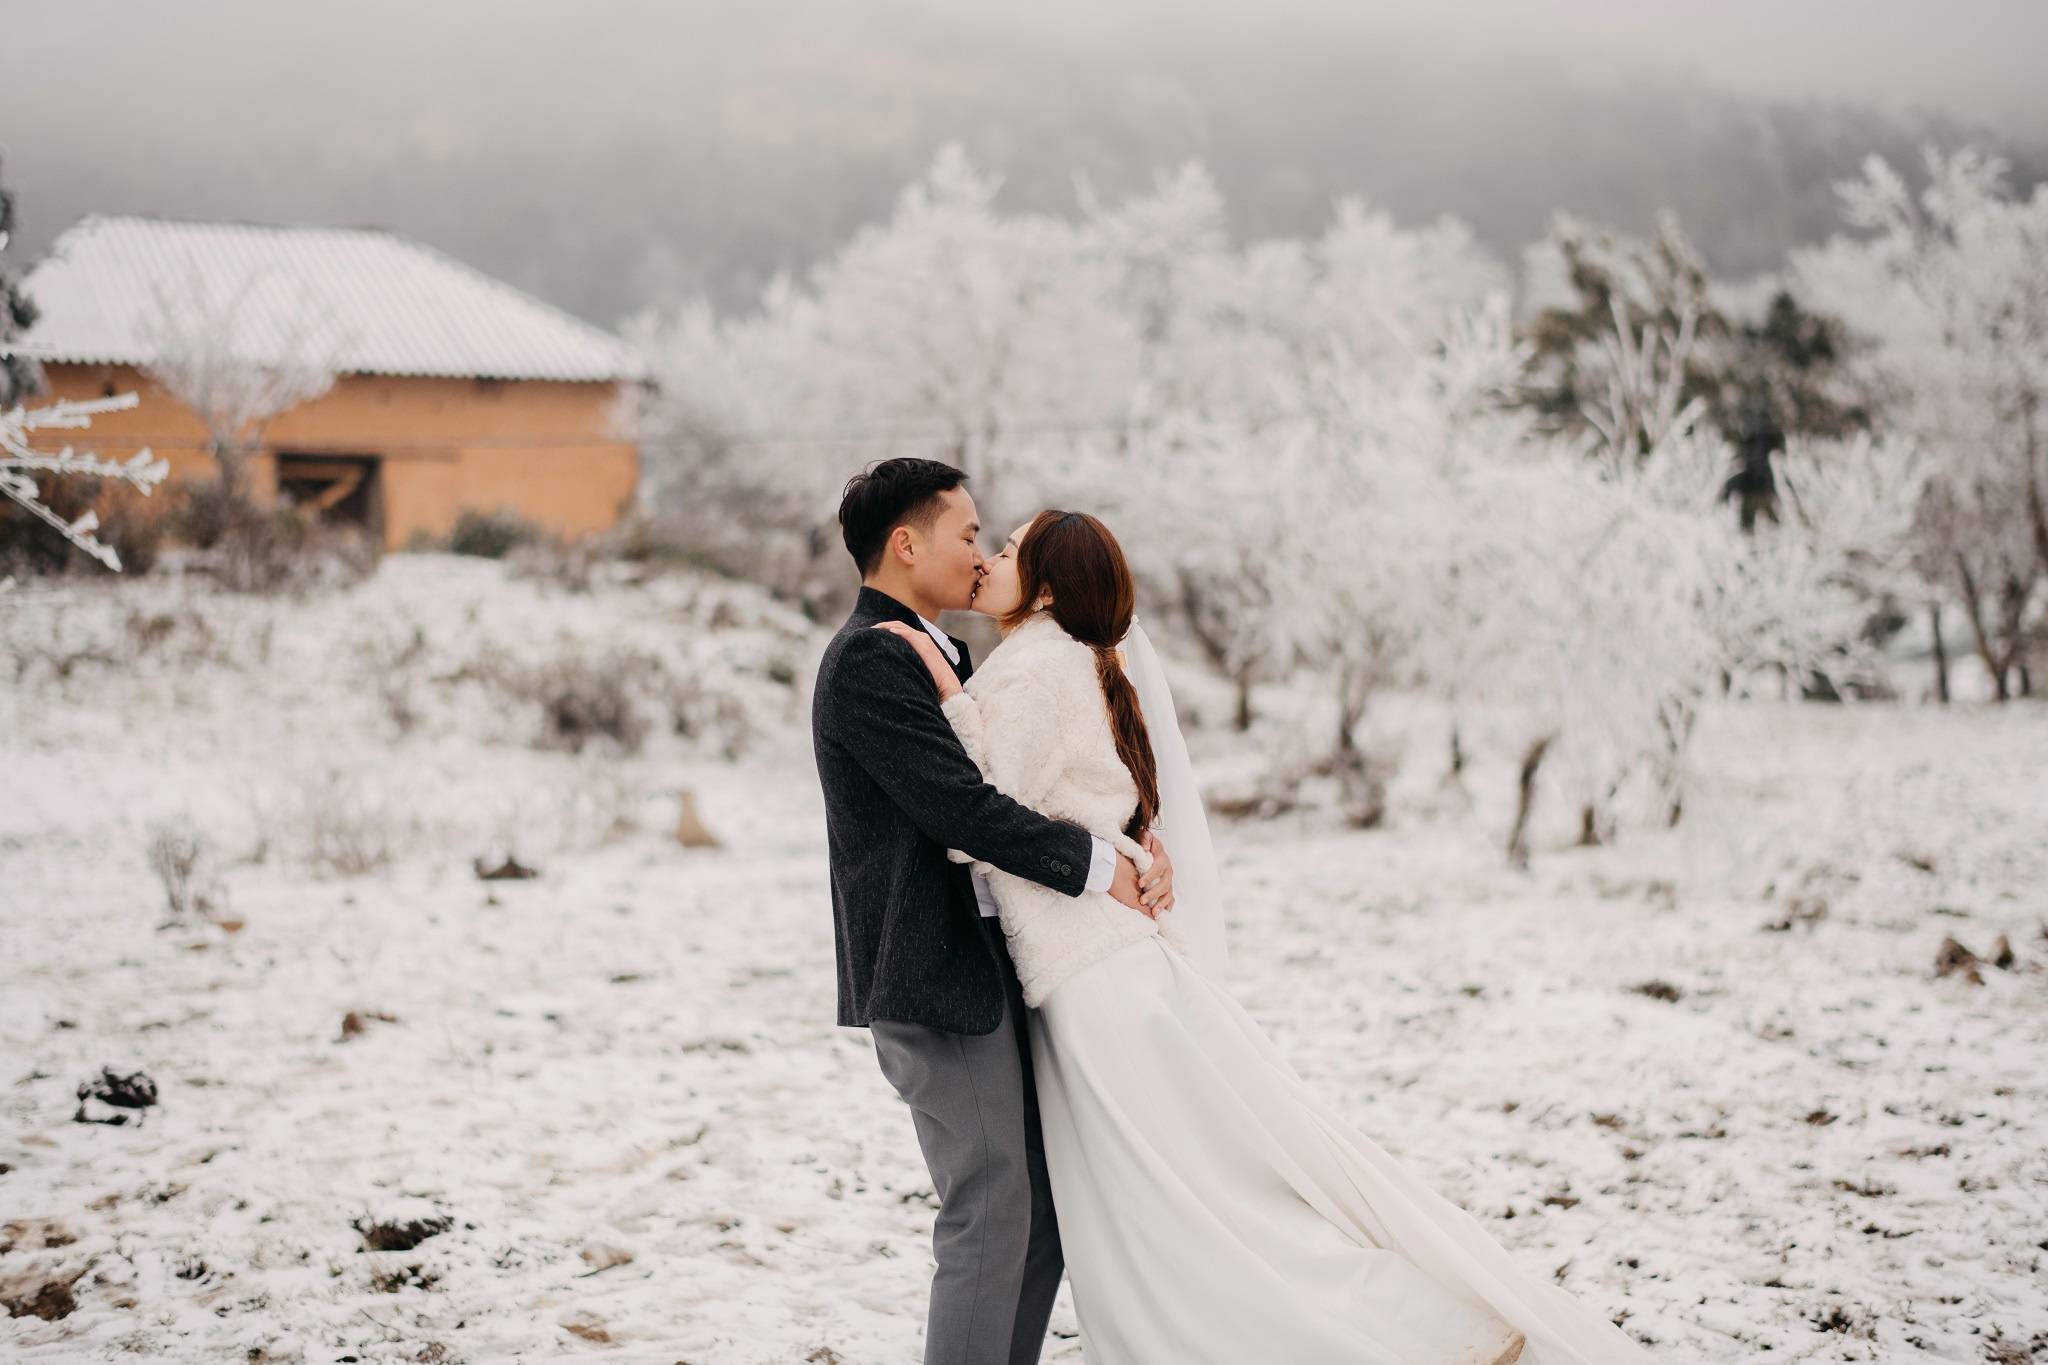 Chịu lạnh để chụp ảnh cưới giữa băng tuyết ở Y Tý - Ảnh 3.